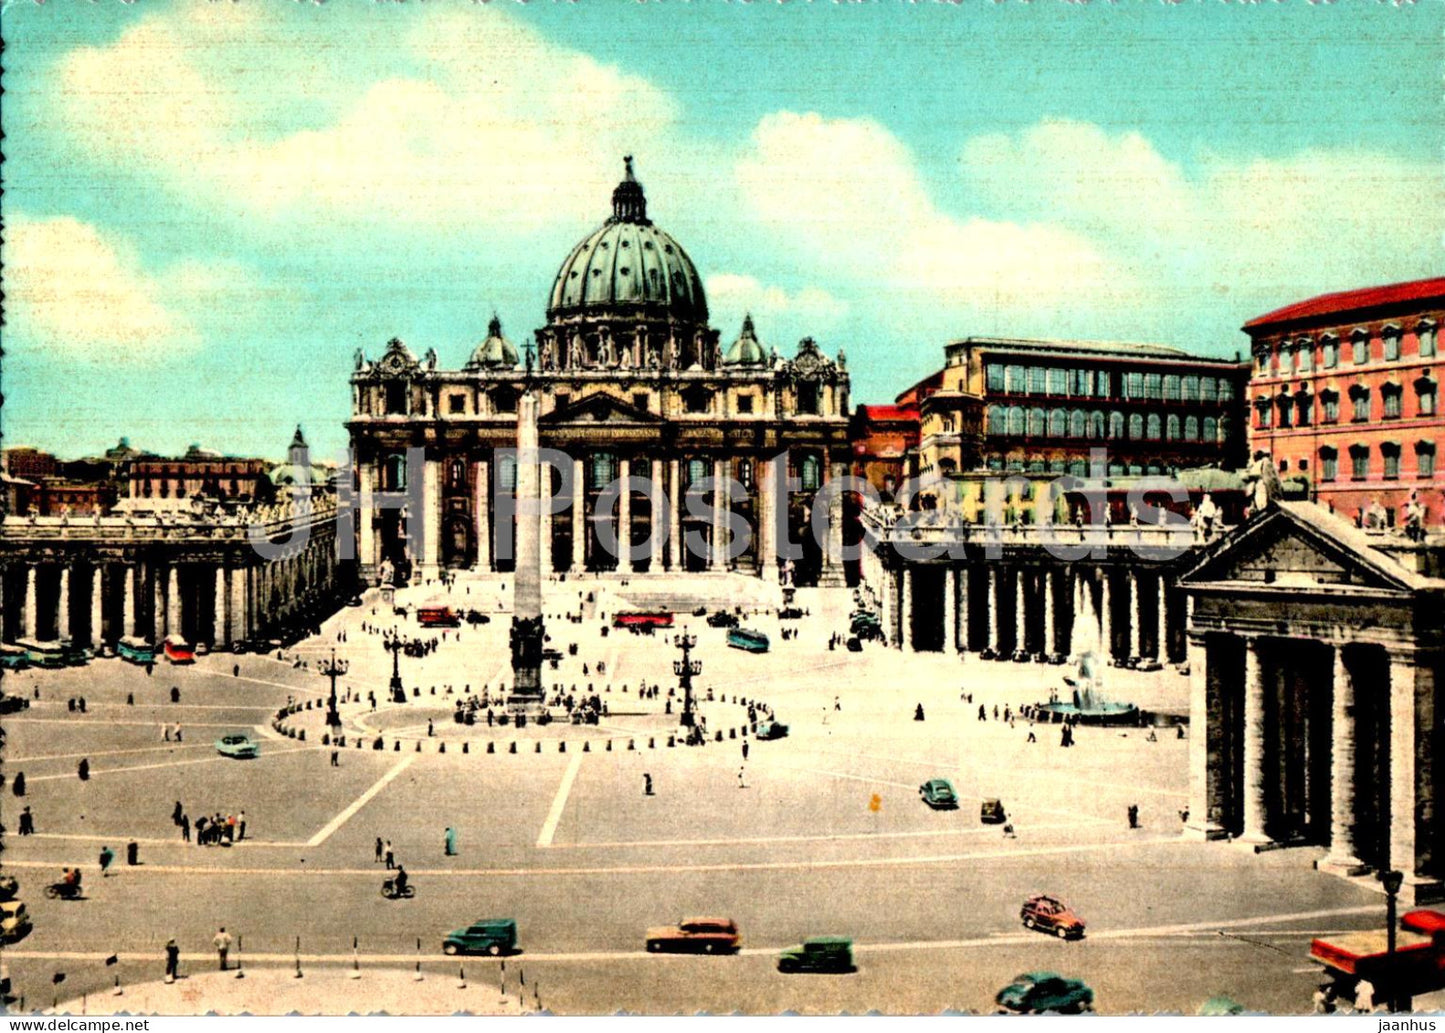 Citta del Vaticano - Basilica di S Pietro - basilica  - Italy Vatican - unused - JH Postcards